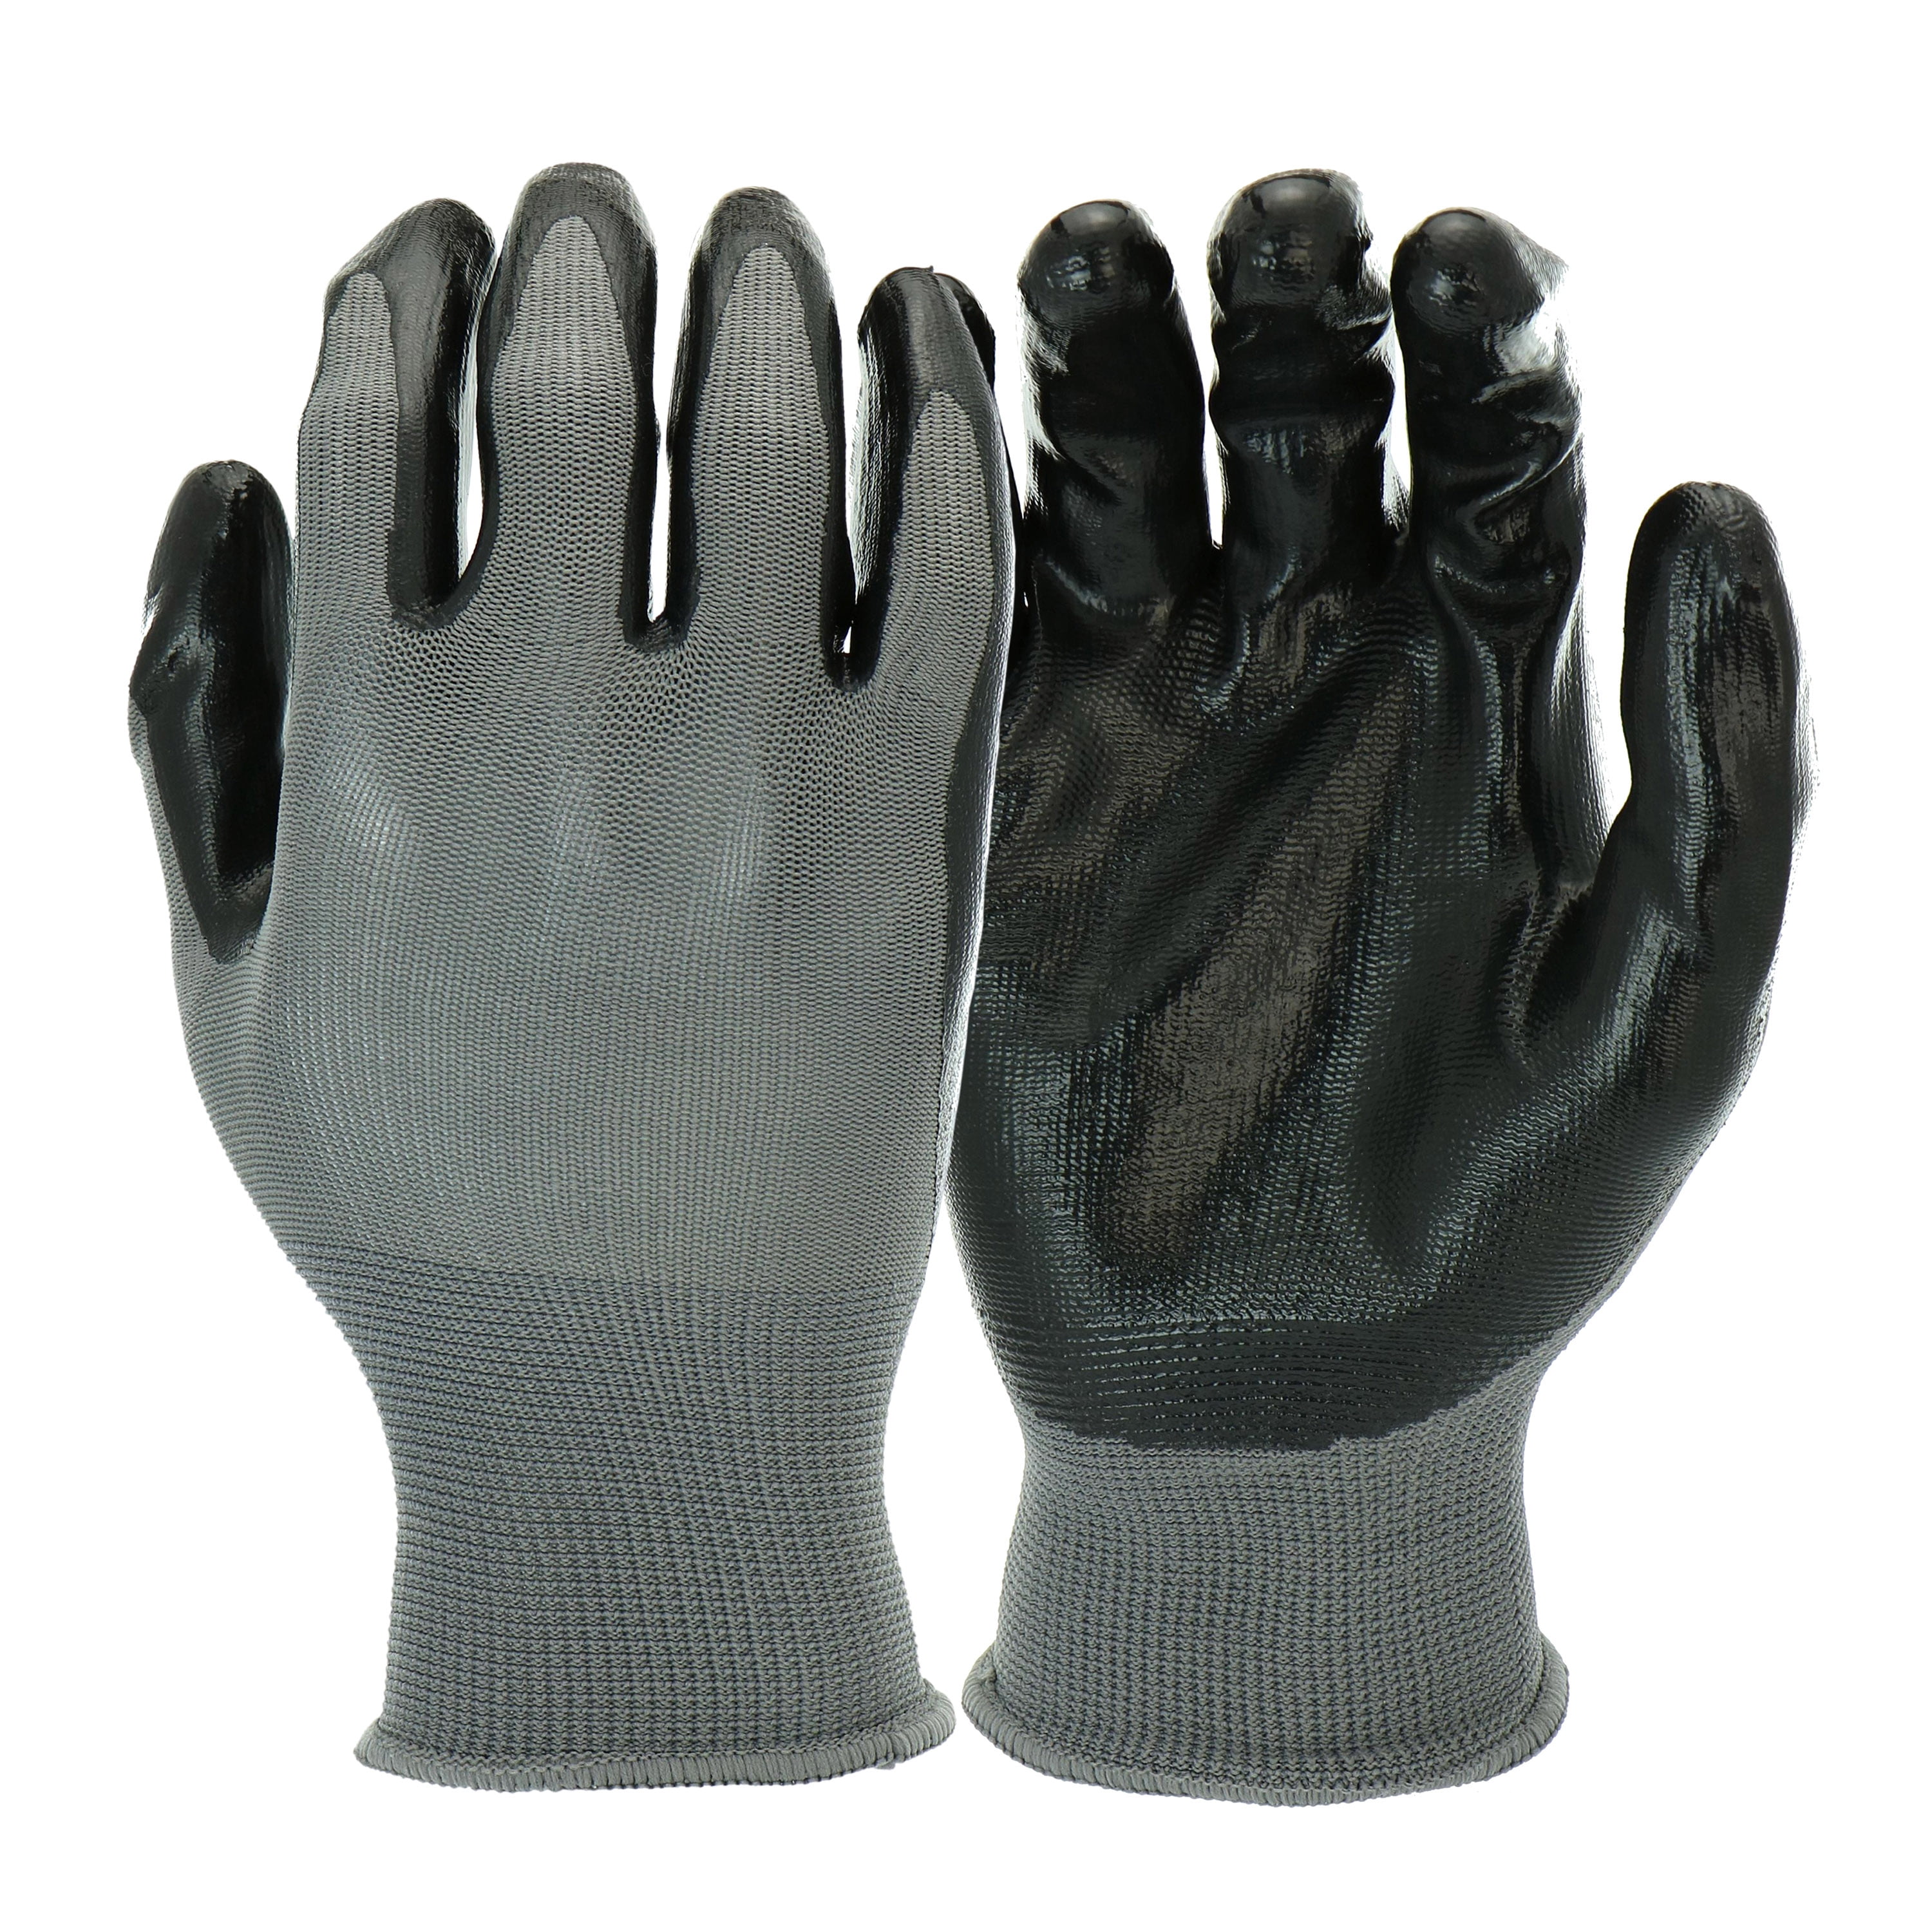 Accessories Gloves & Mittens Gardening & Work Gloves BLACK NITRILE GLOVES 